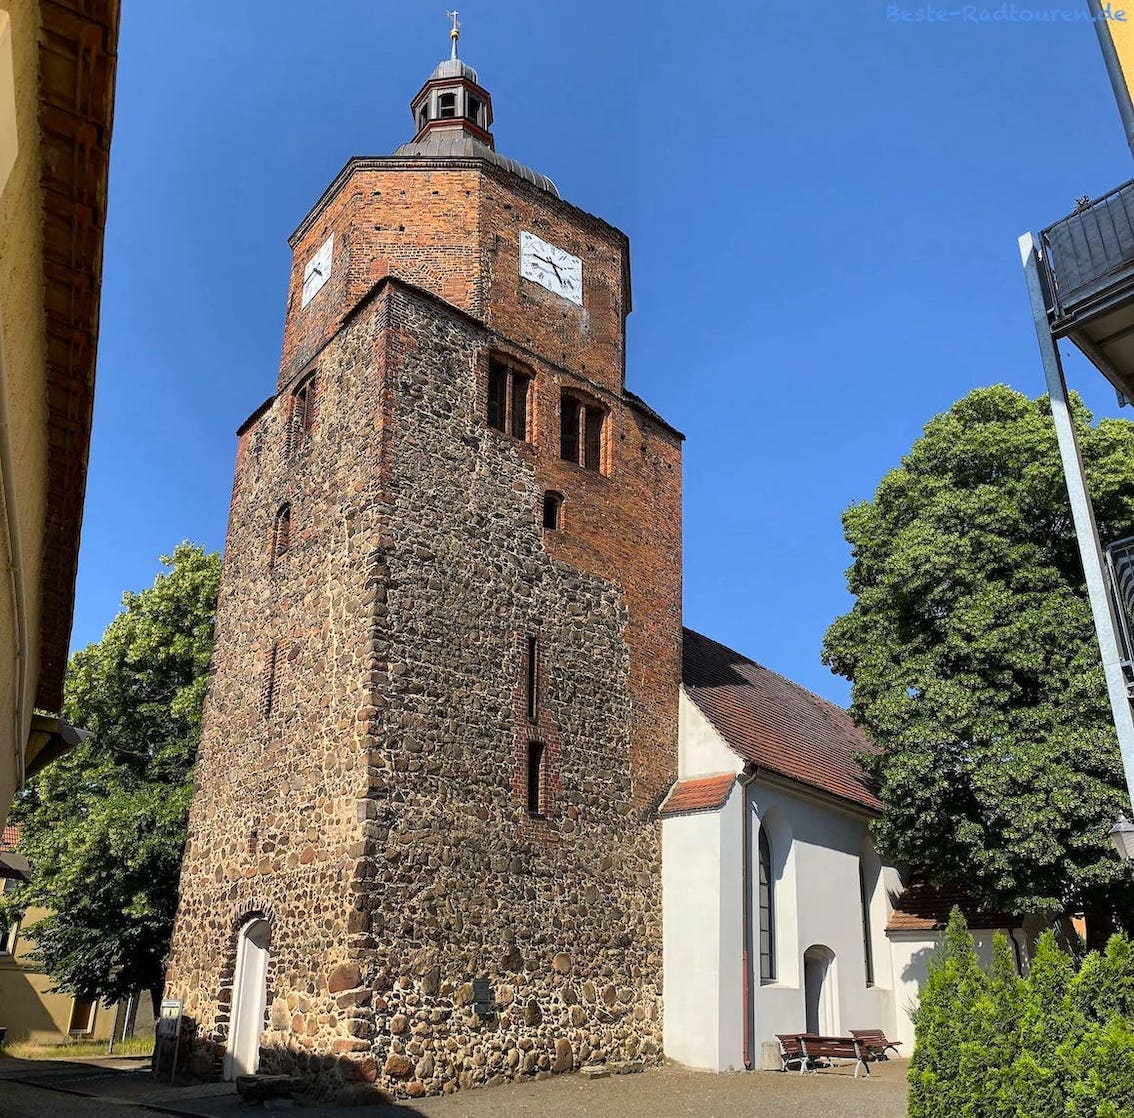 Wendisch-Deutsche Doppelkirche in Vetschau, Foto des dicken Turmes von unten